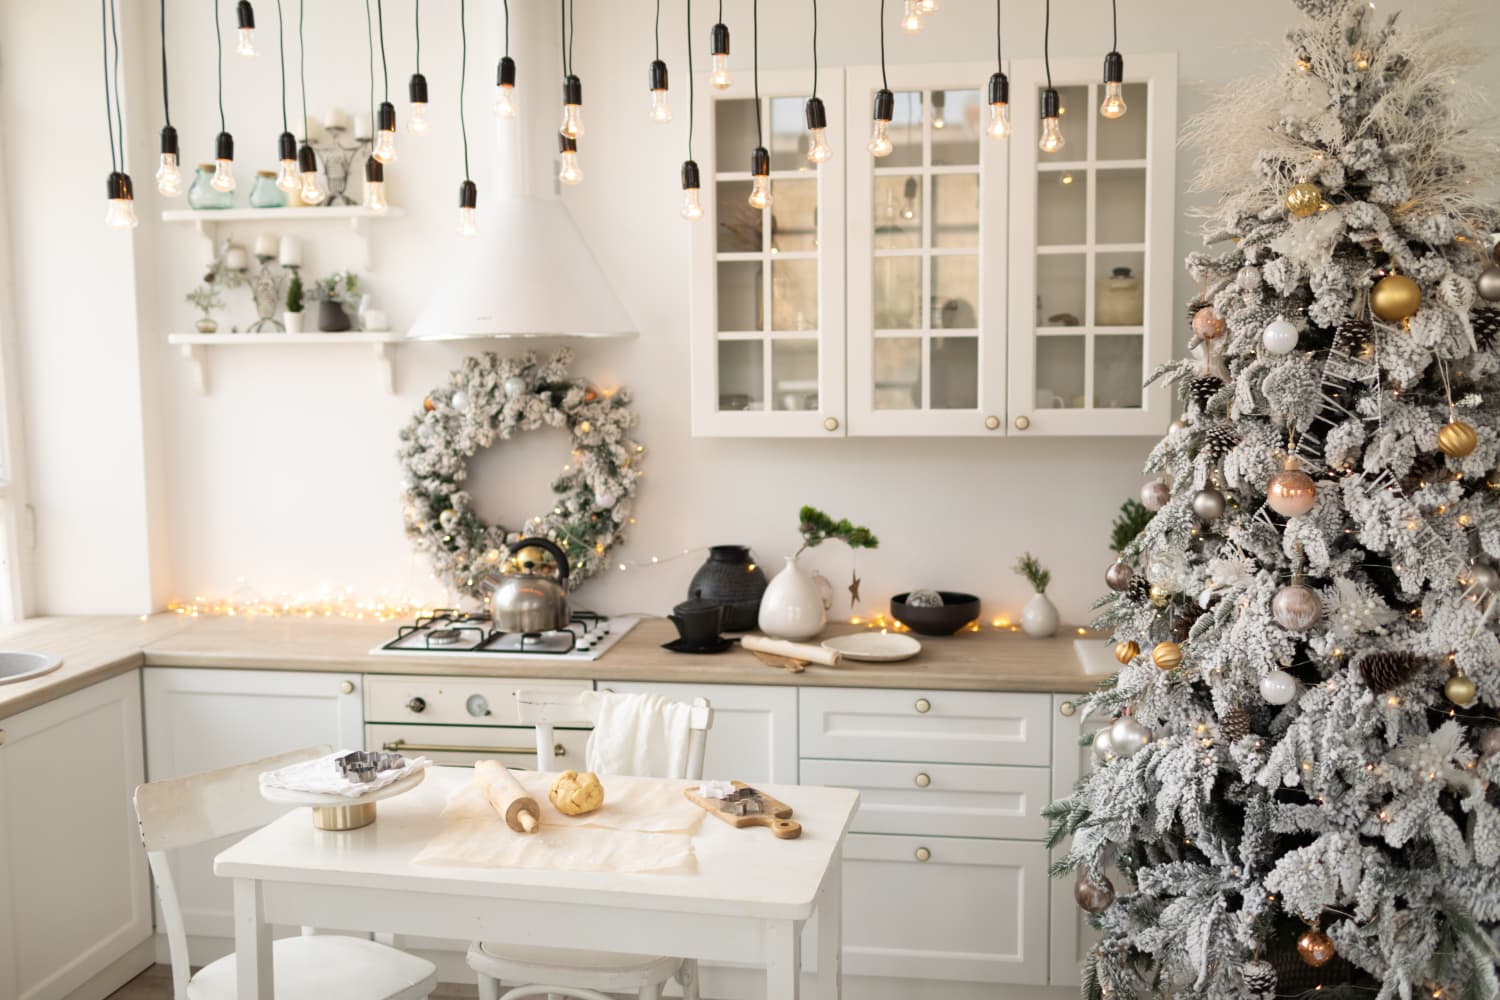 Make Your Home Smell Like Christmas